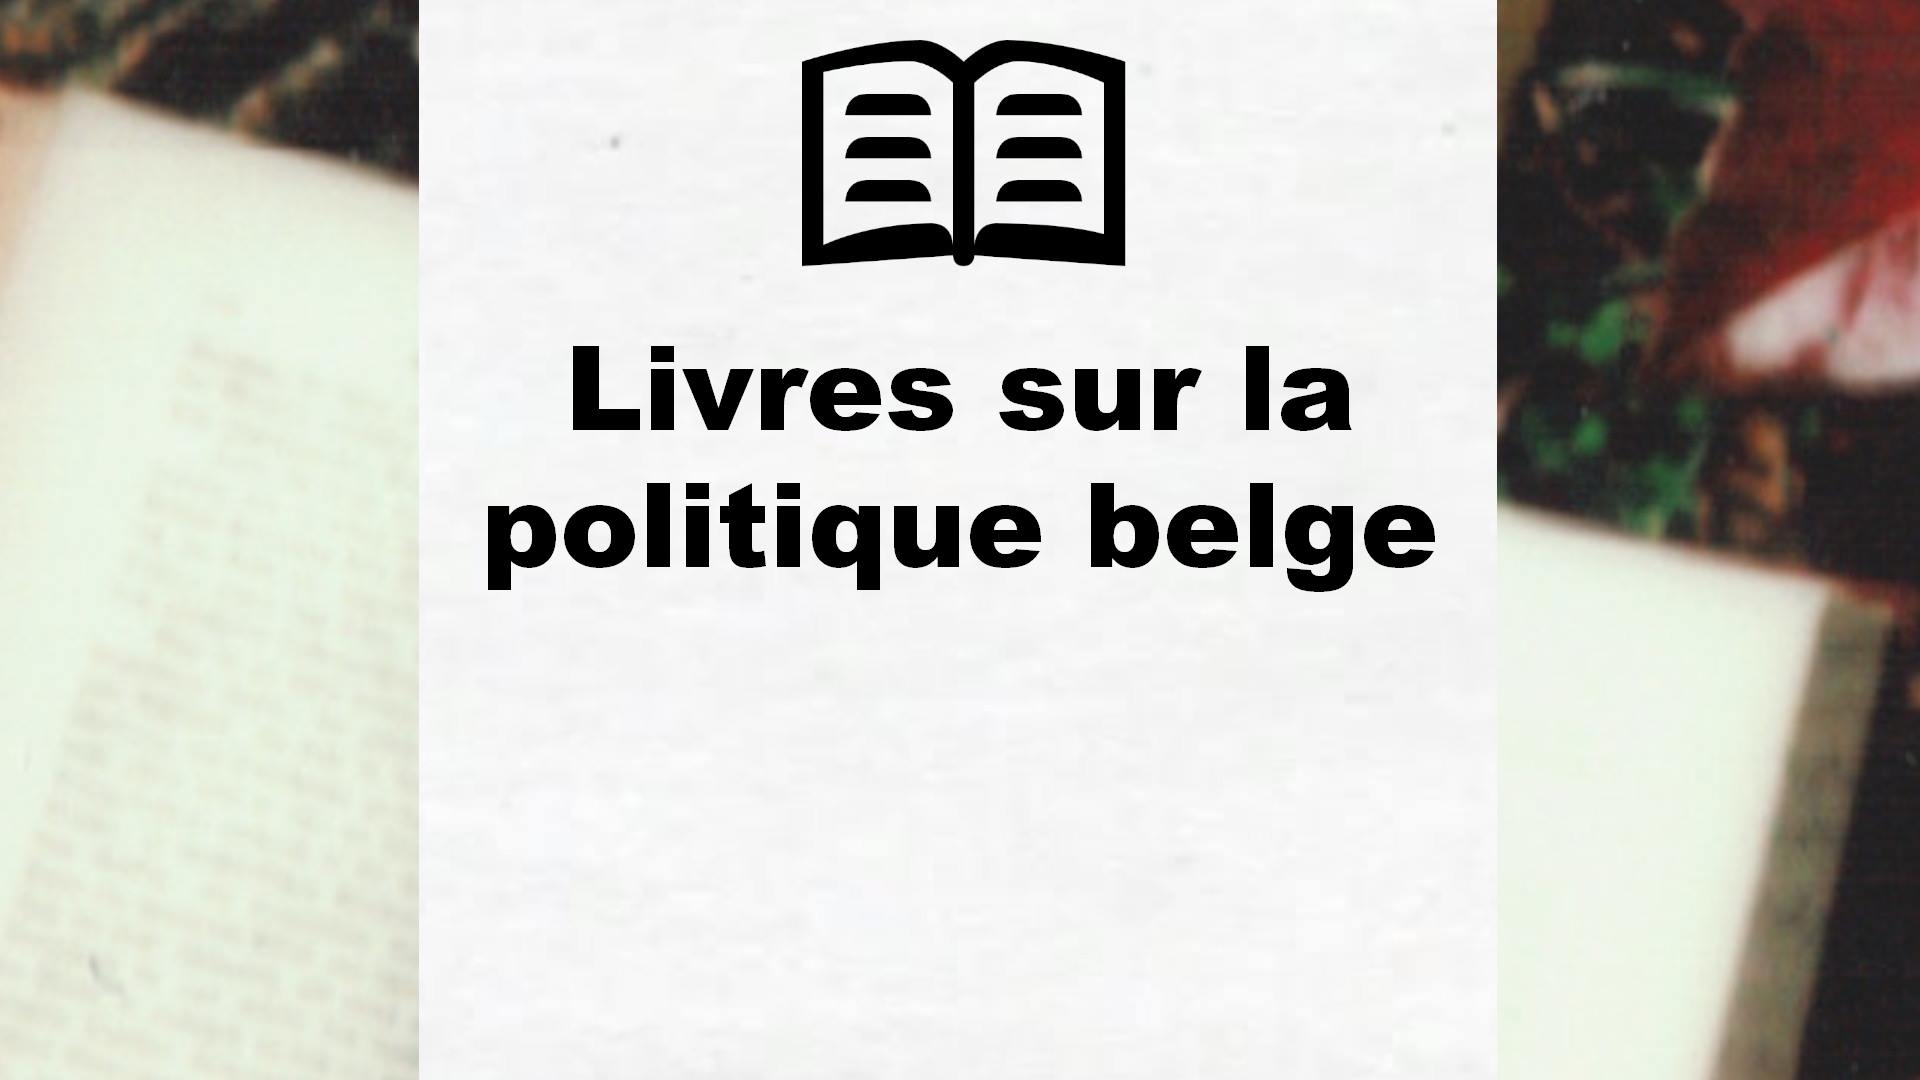 Livres sur la politique belge